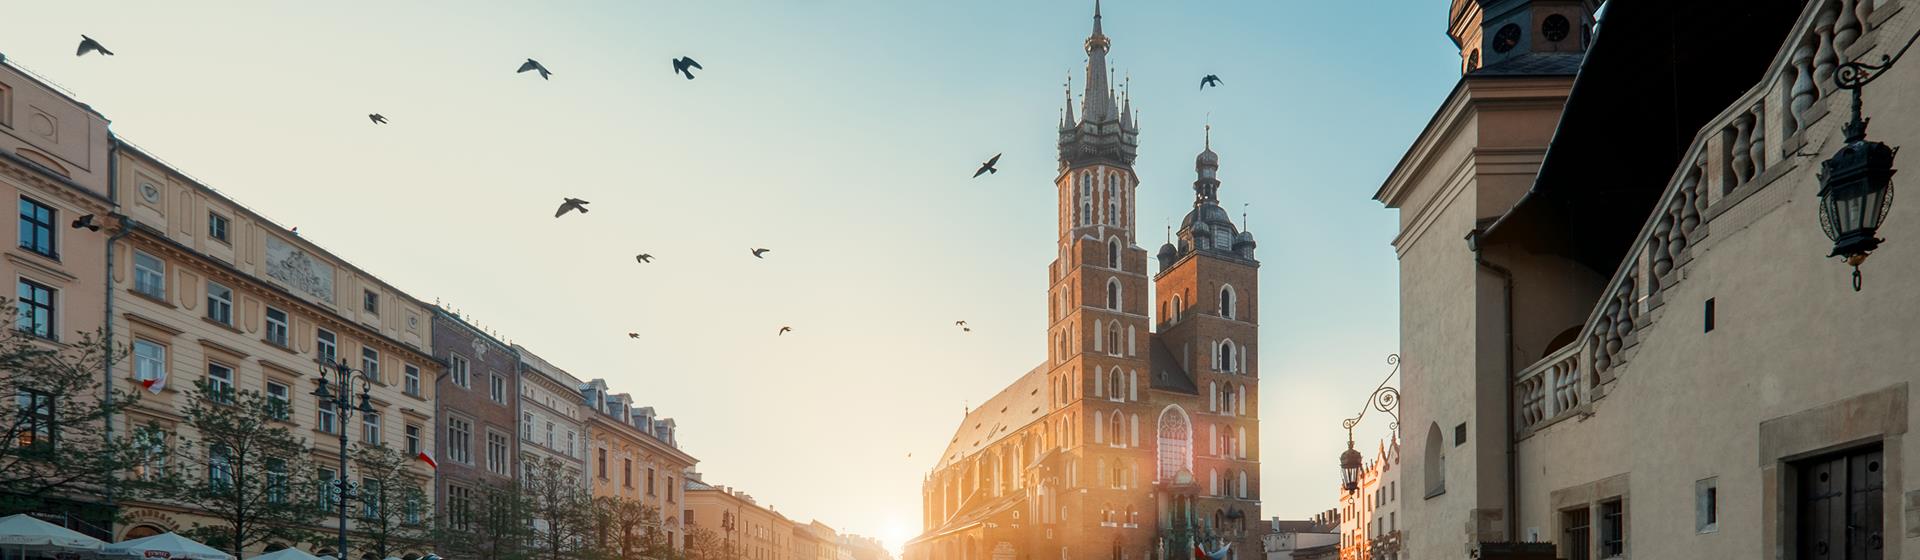 Holidays & City Breaks to Krakow